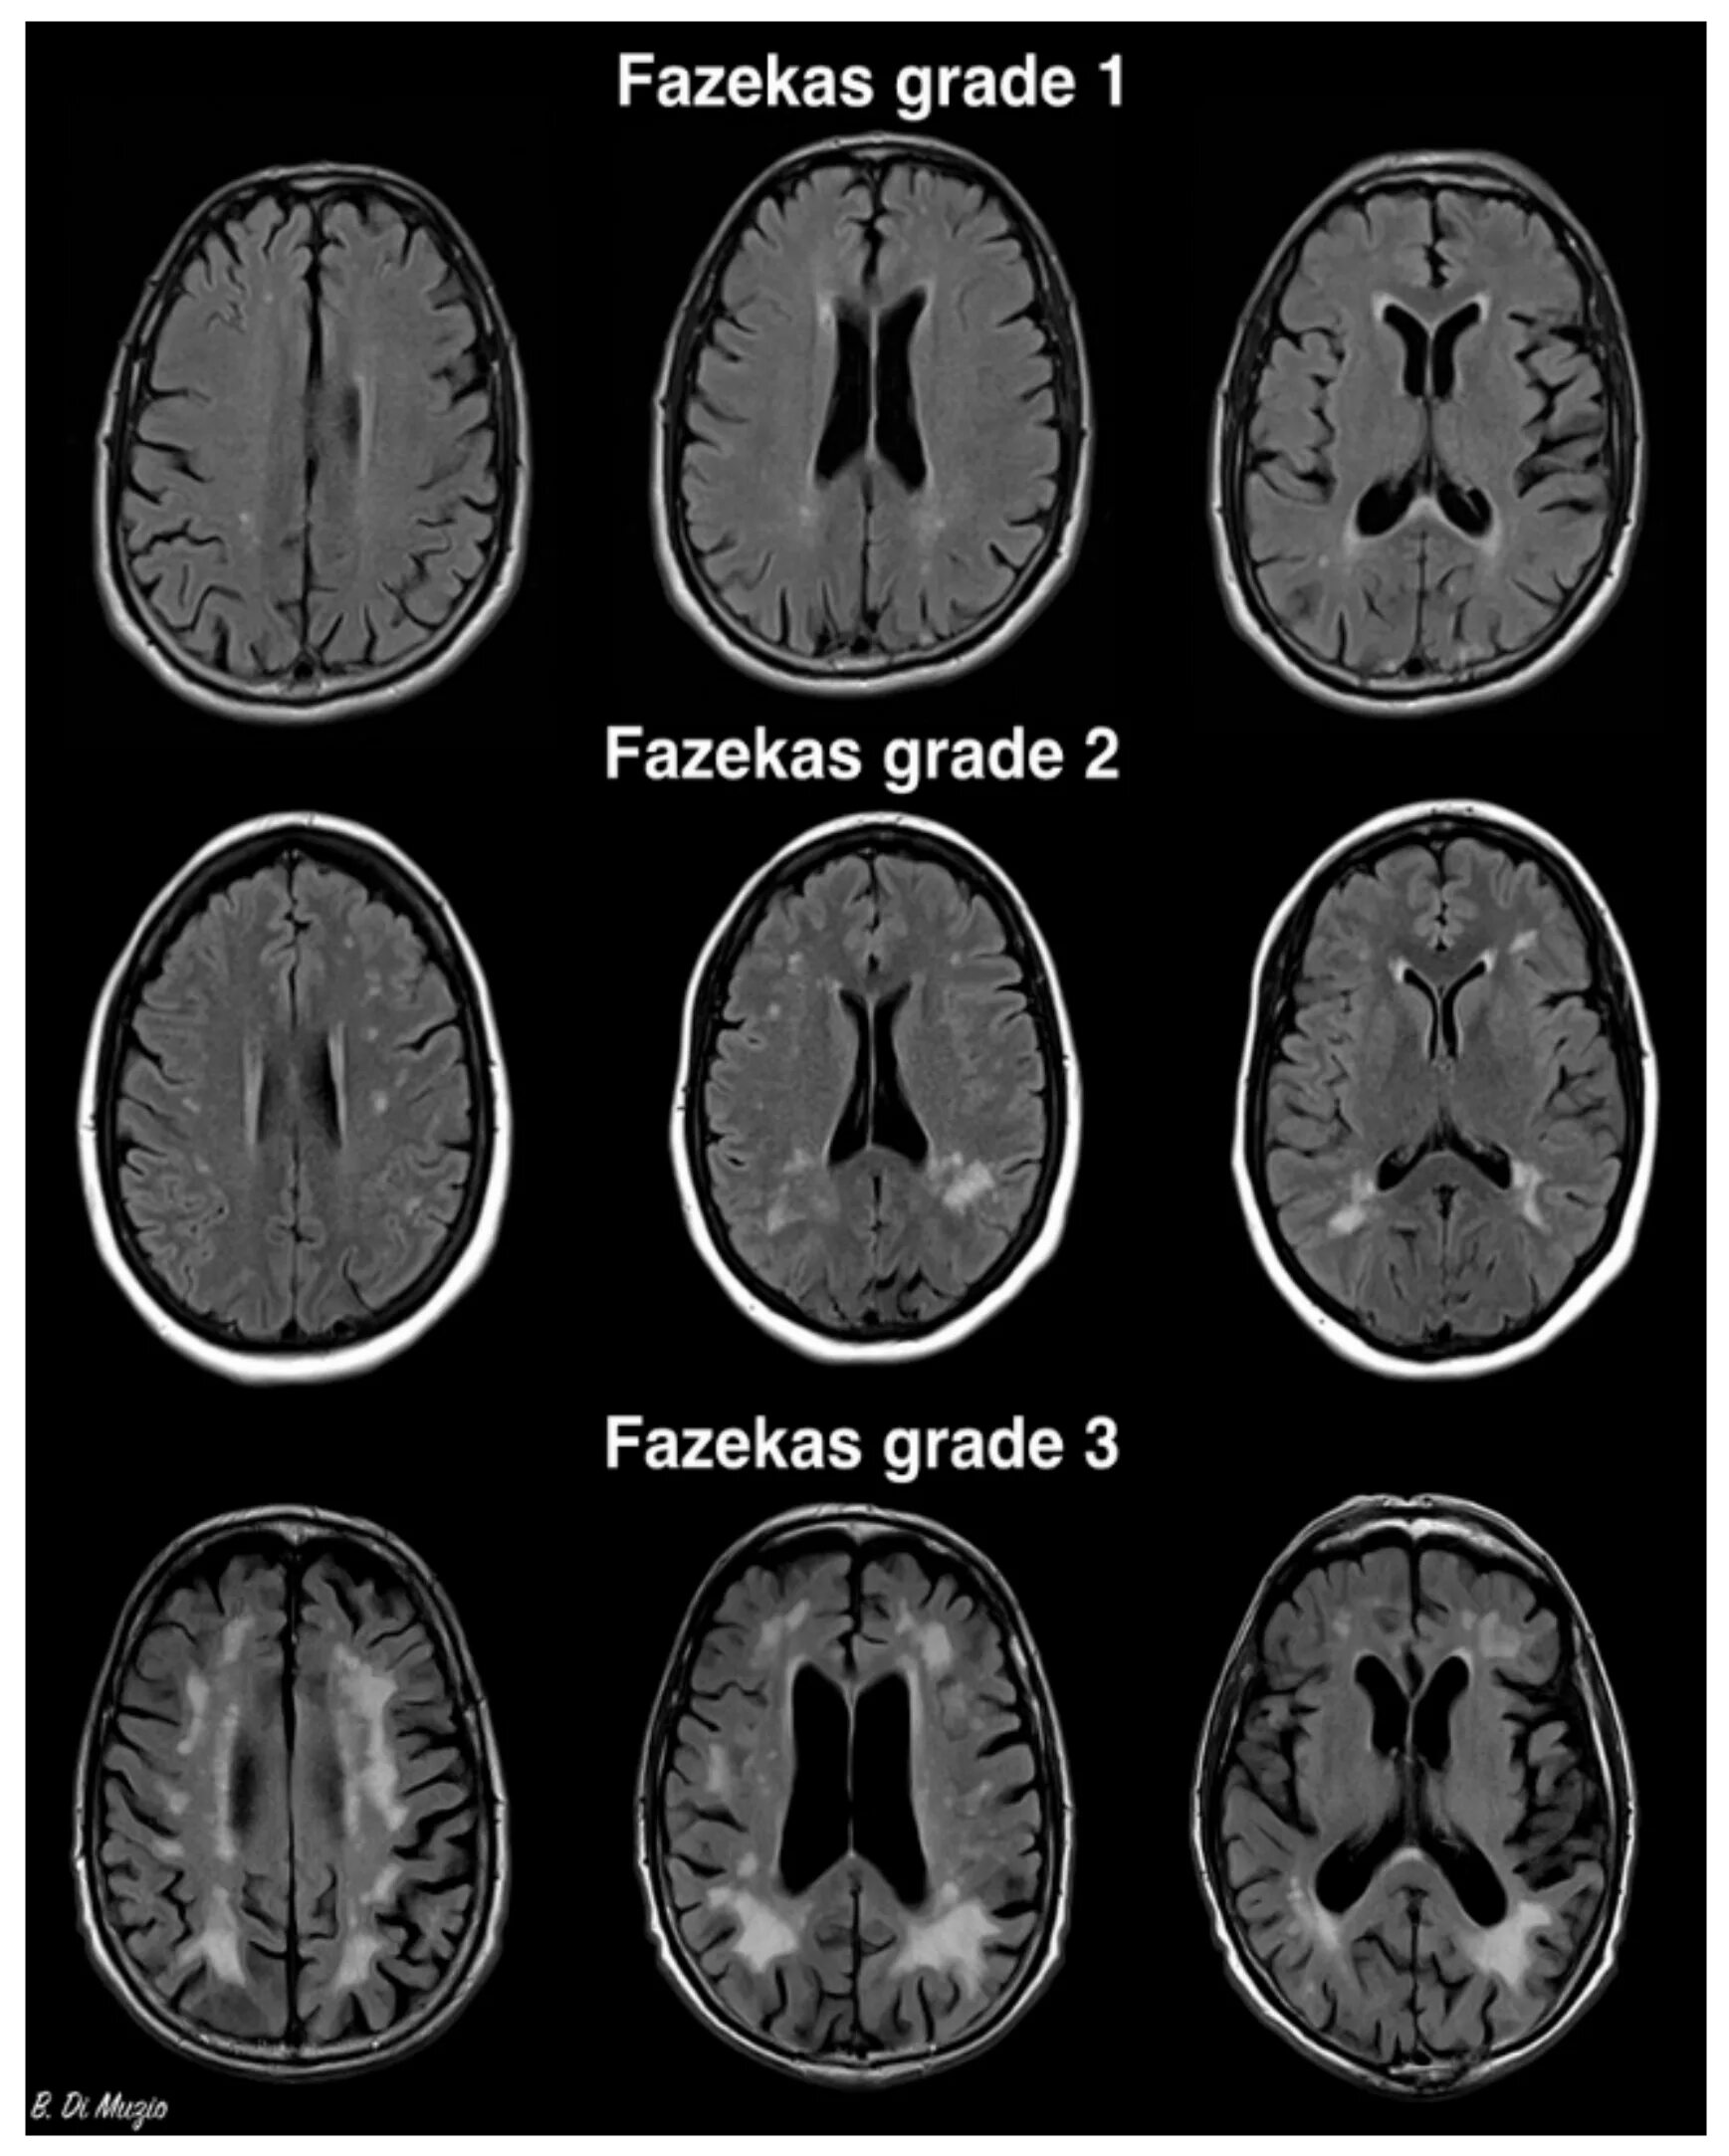 Атрофия полушарий. Лейкоареоз 2 степени по Fazekas. Очаги микроангиопатии в веществе головного мозга Fazekas Grade 1. Лейкоареоз 3 степени по Fazekas. Fazekas мрт головного мозга.